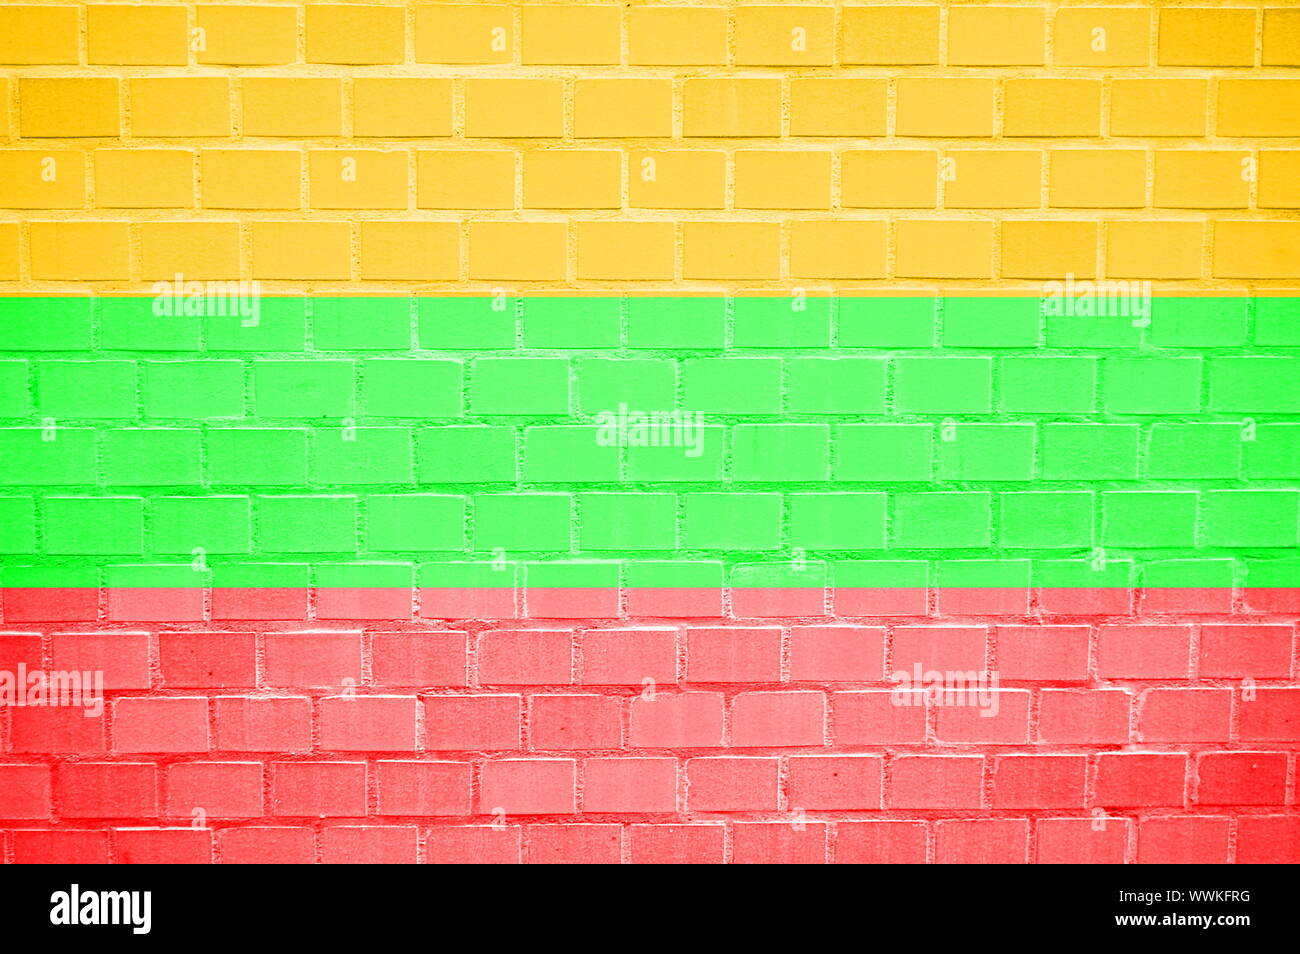 Flagge gemalt auf einem brickwall können als Hintergrund verwendet werden Stockfoto